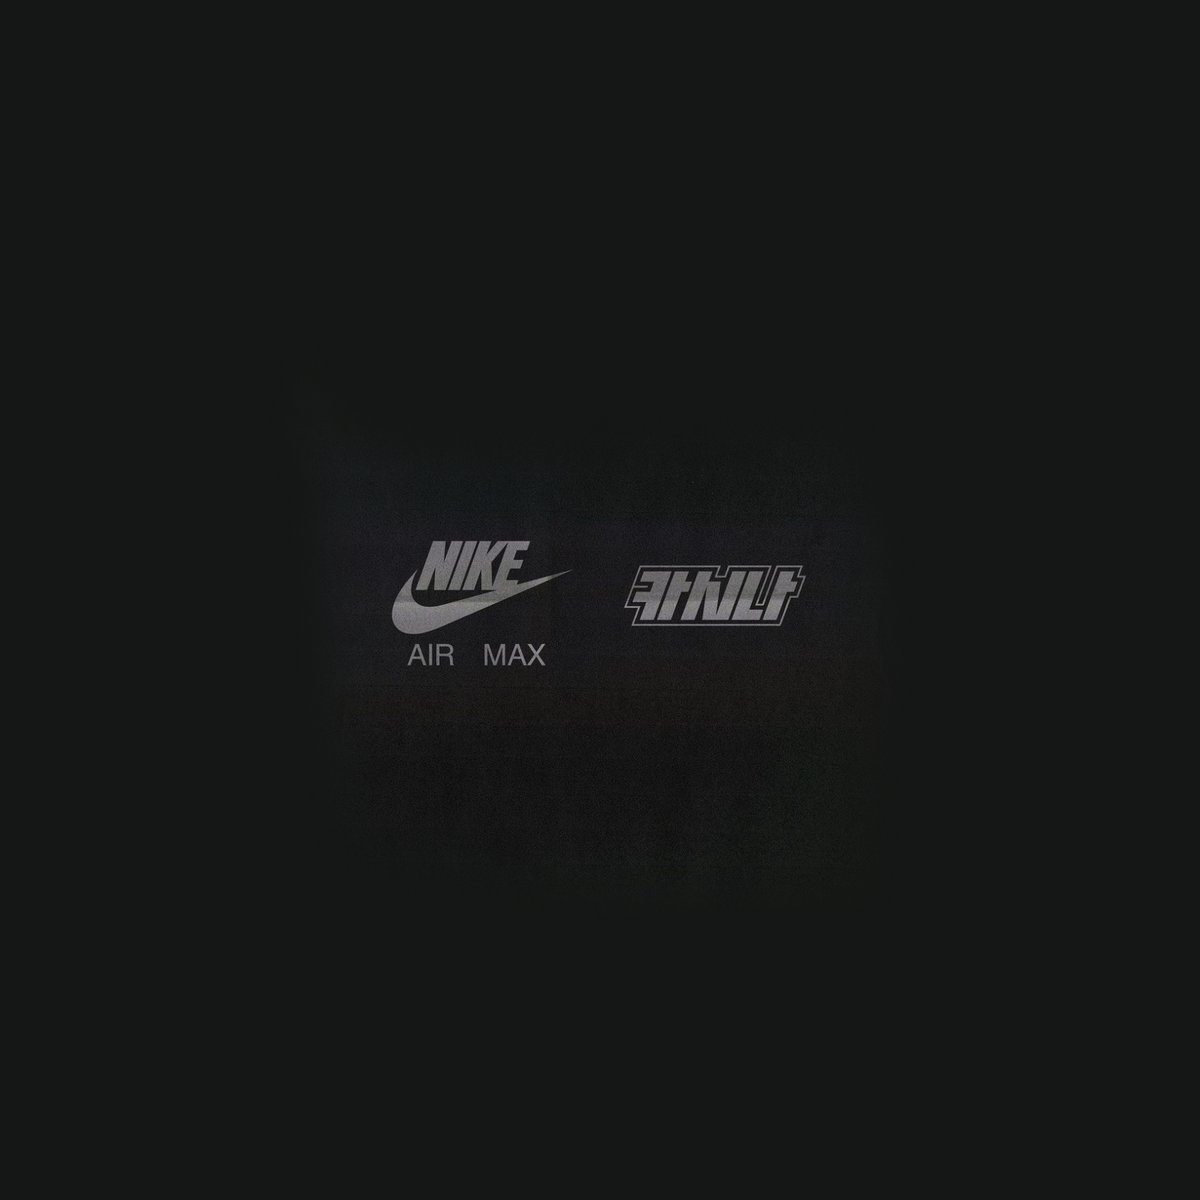 A Closer Look At The Kasina x Nike Air Max 1